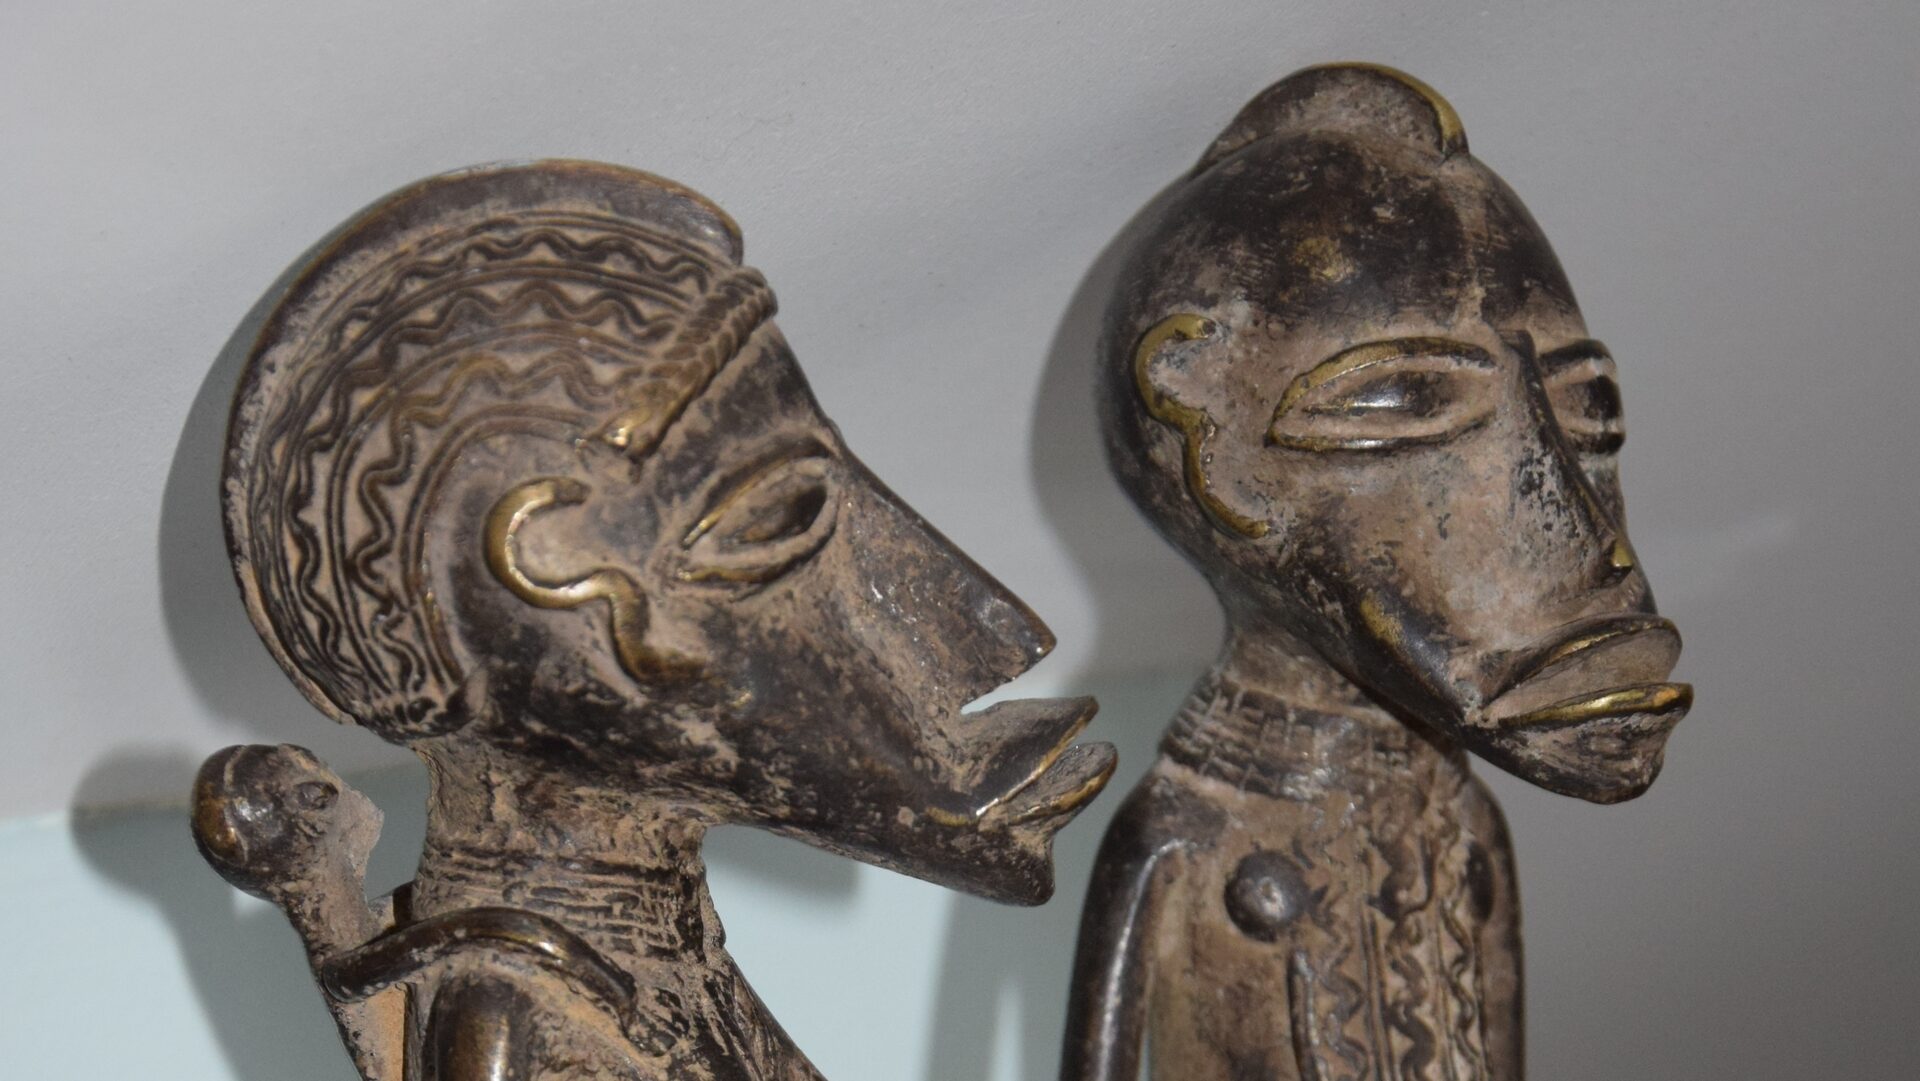 Depuis 1930, l'Afrique a vendu elle-même son patrimoine, comme ce couple sahélien en bronze, notamment sur des marchés locaux. | DR